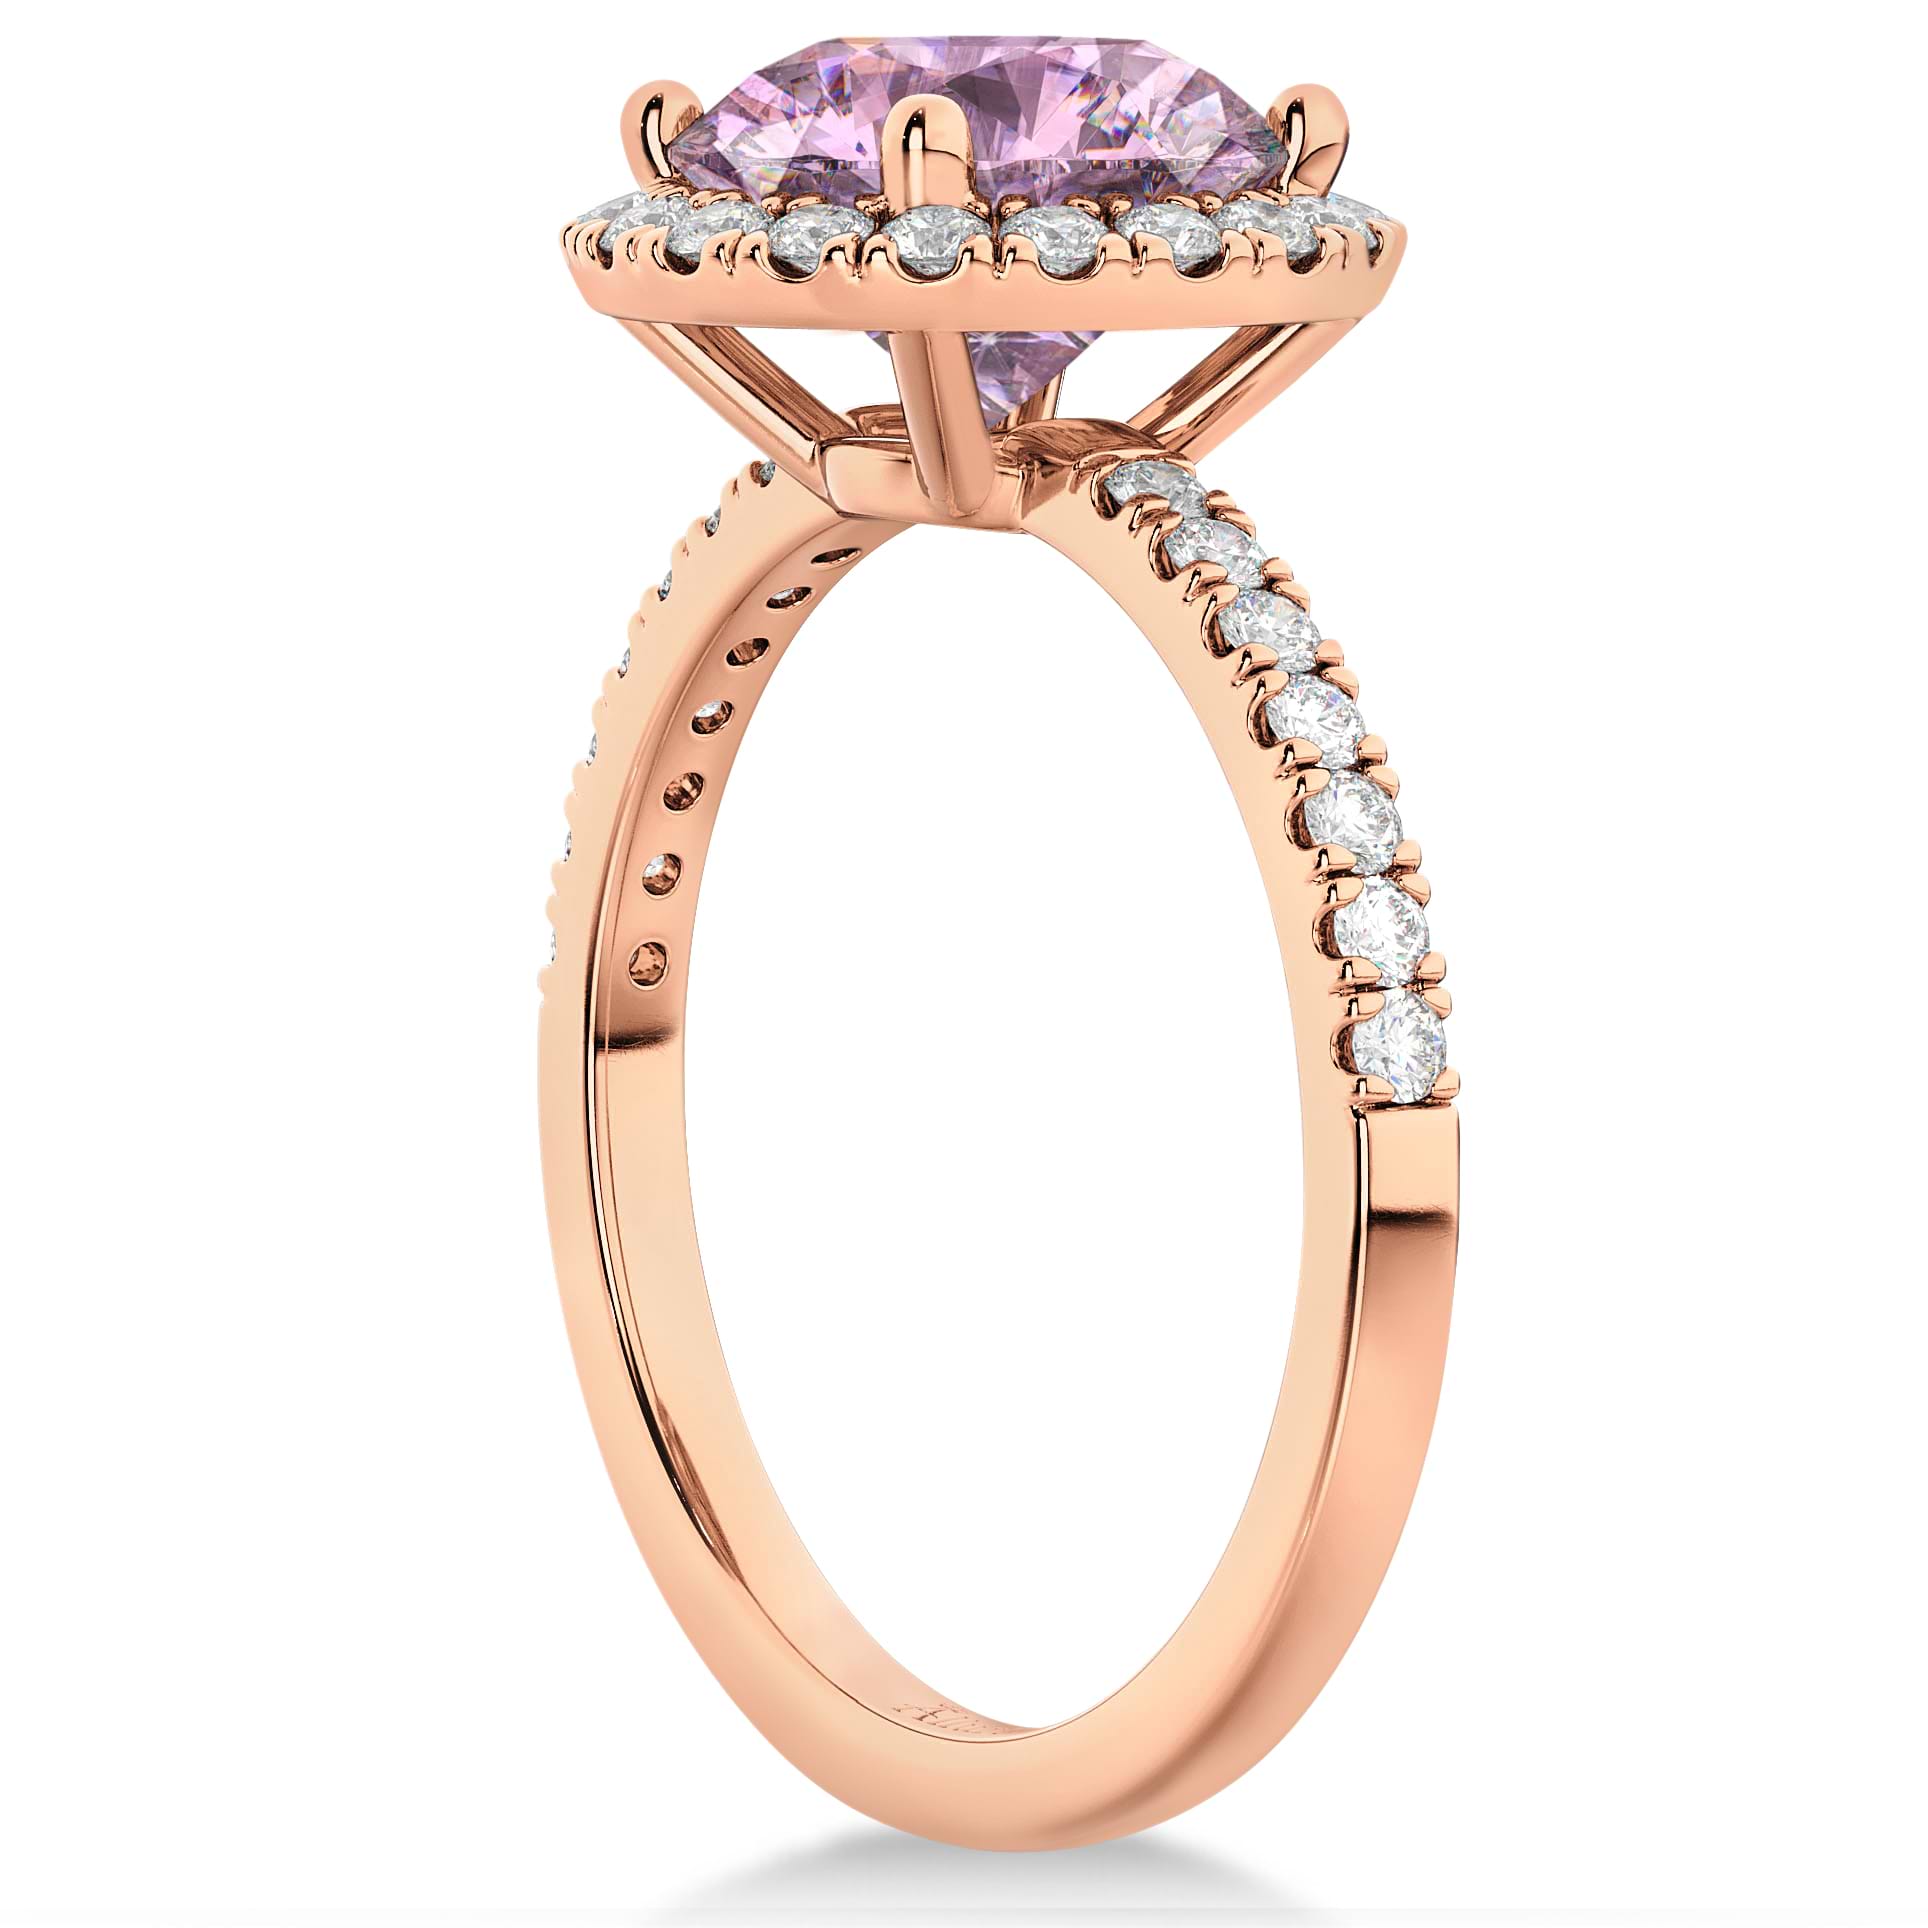 Halo Pink Moissanite & Diamond Engagement Ring 14K Rose Gold 2.10ct